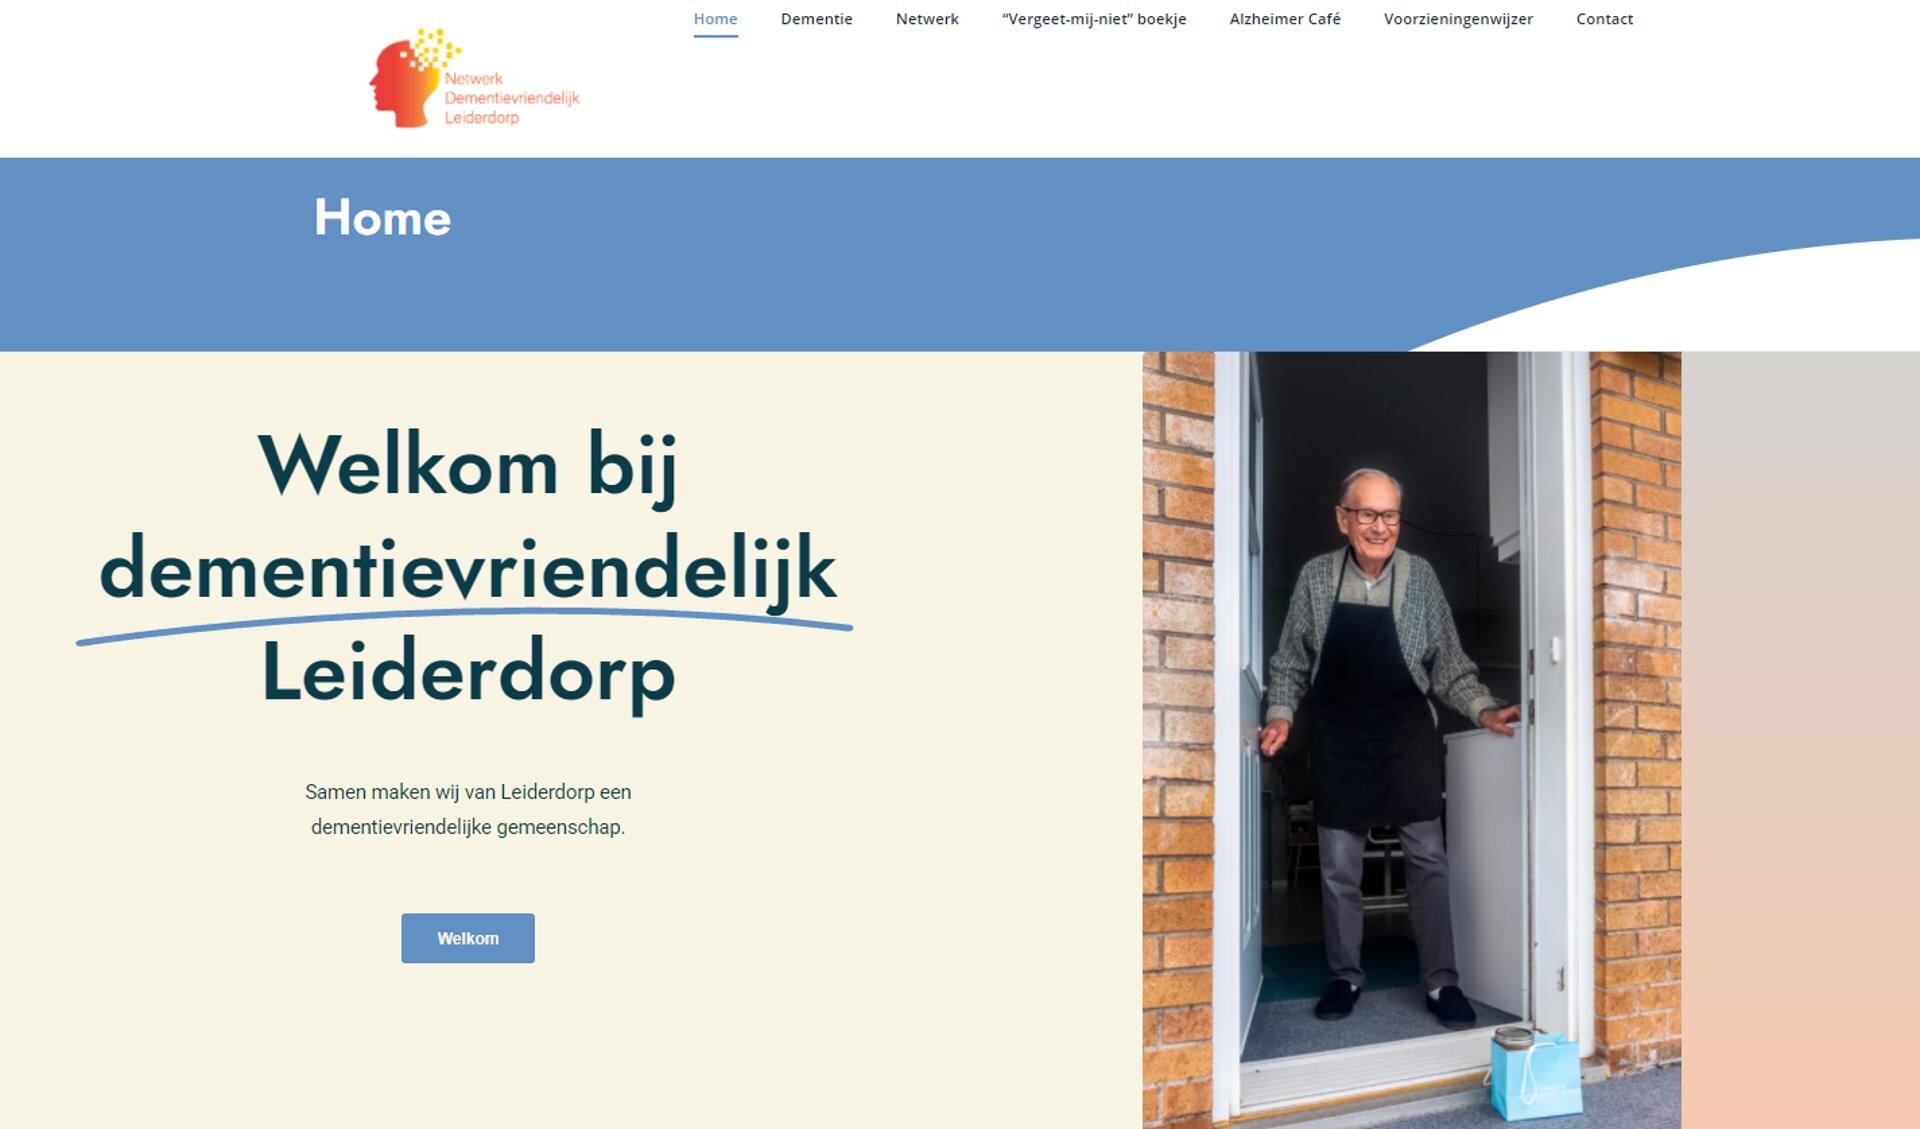 De website www.dementievriendelijkleiderdorp.nl is een informatiebron en wegwijzer ineen. 